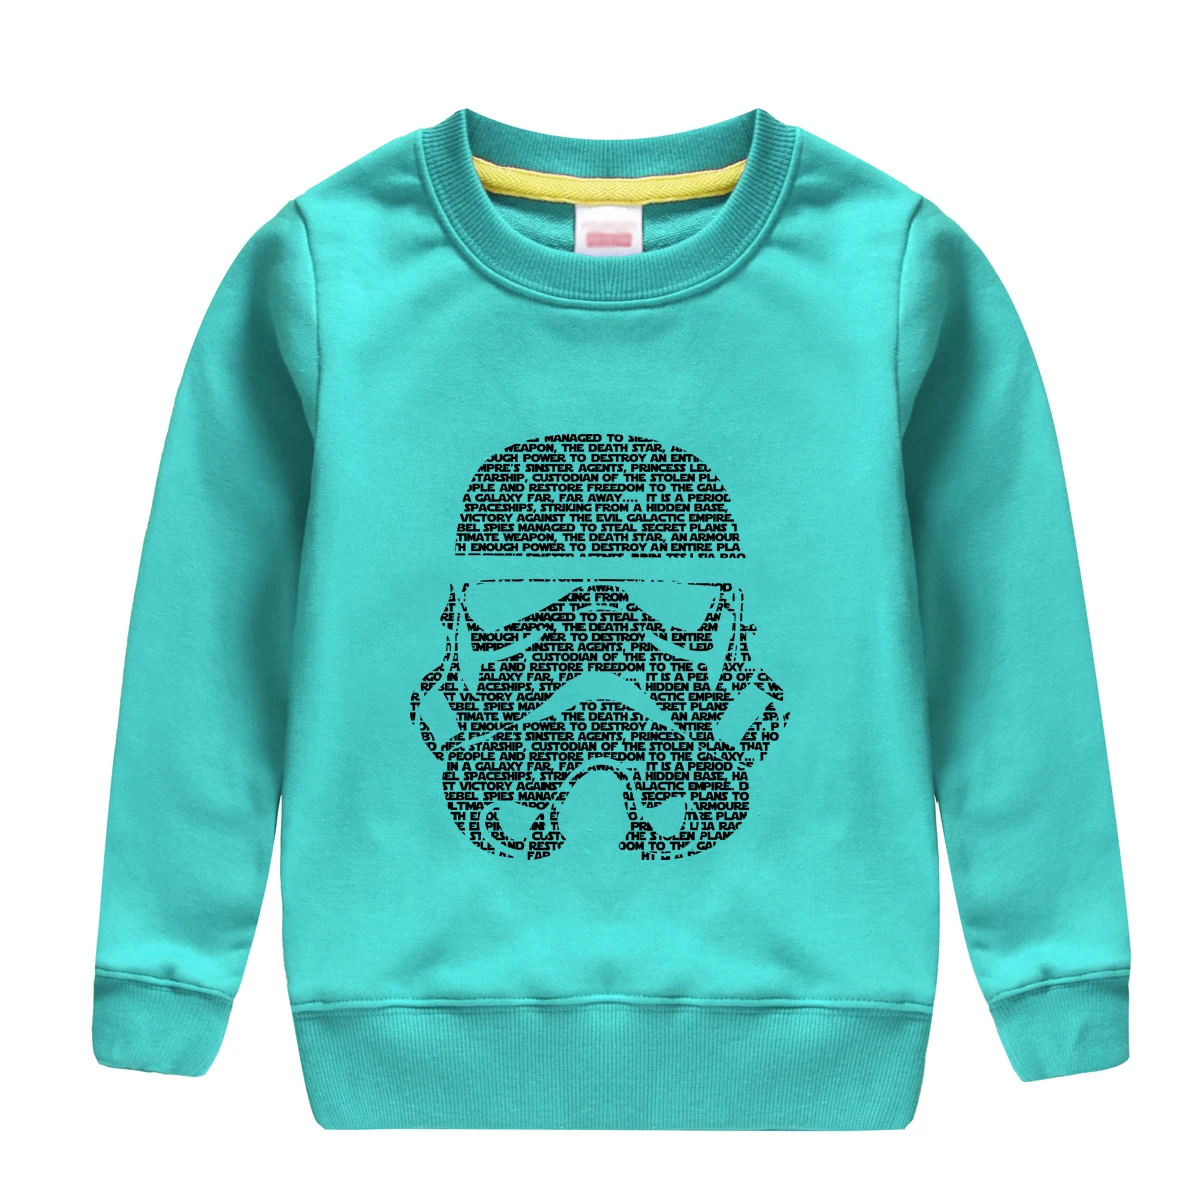 Новая модная зимняя одежда осенний Свитшот Топ мягкого хлопка пуловер высокого качества одежда для маленьких мальчиков с Звездные войны футболки с изображением - Цвет: light green